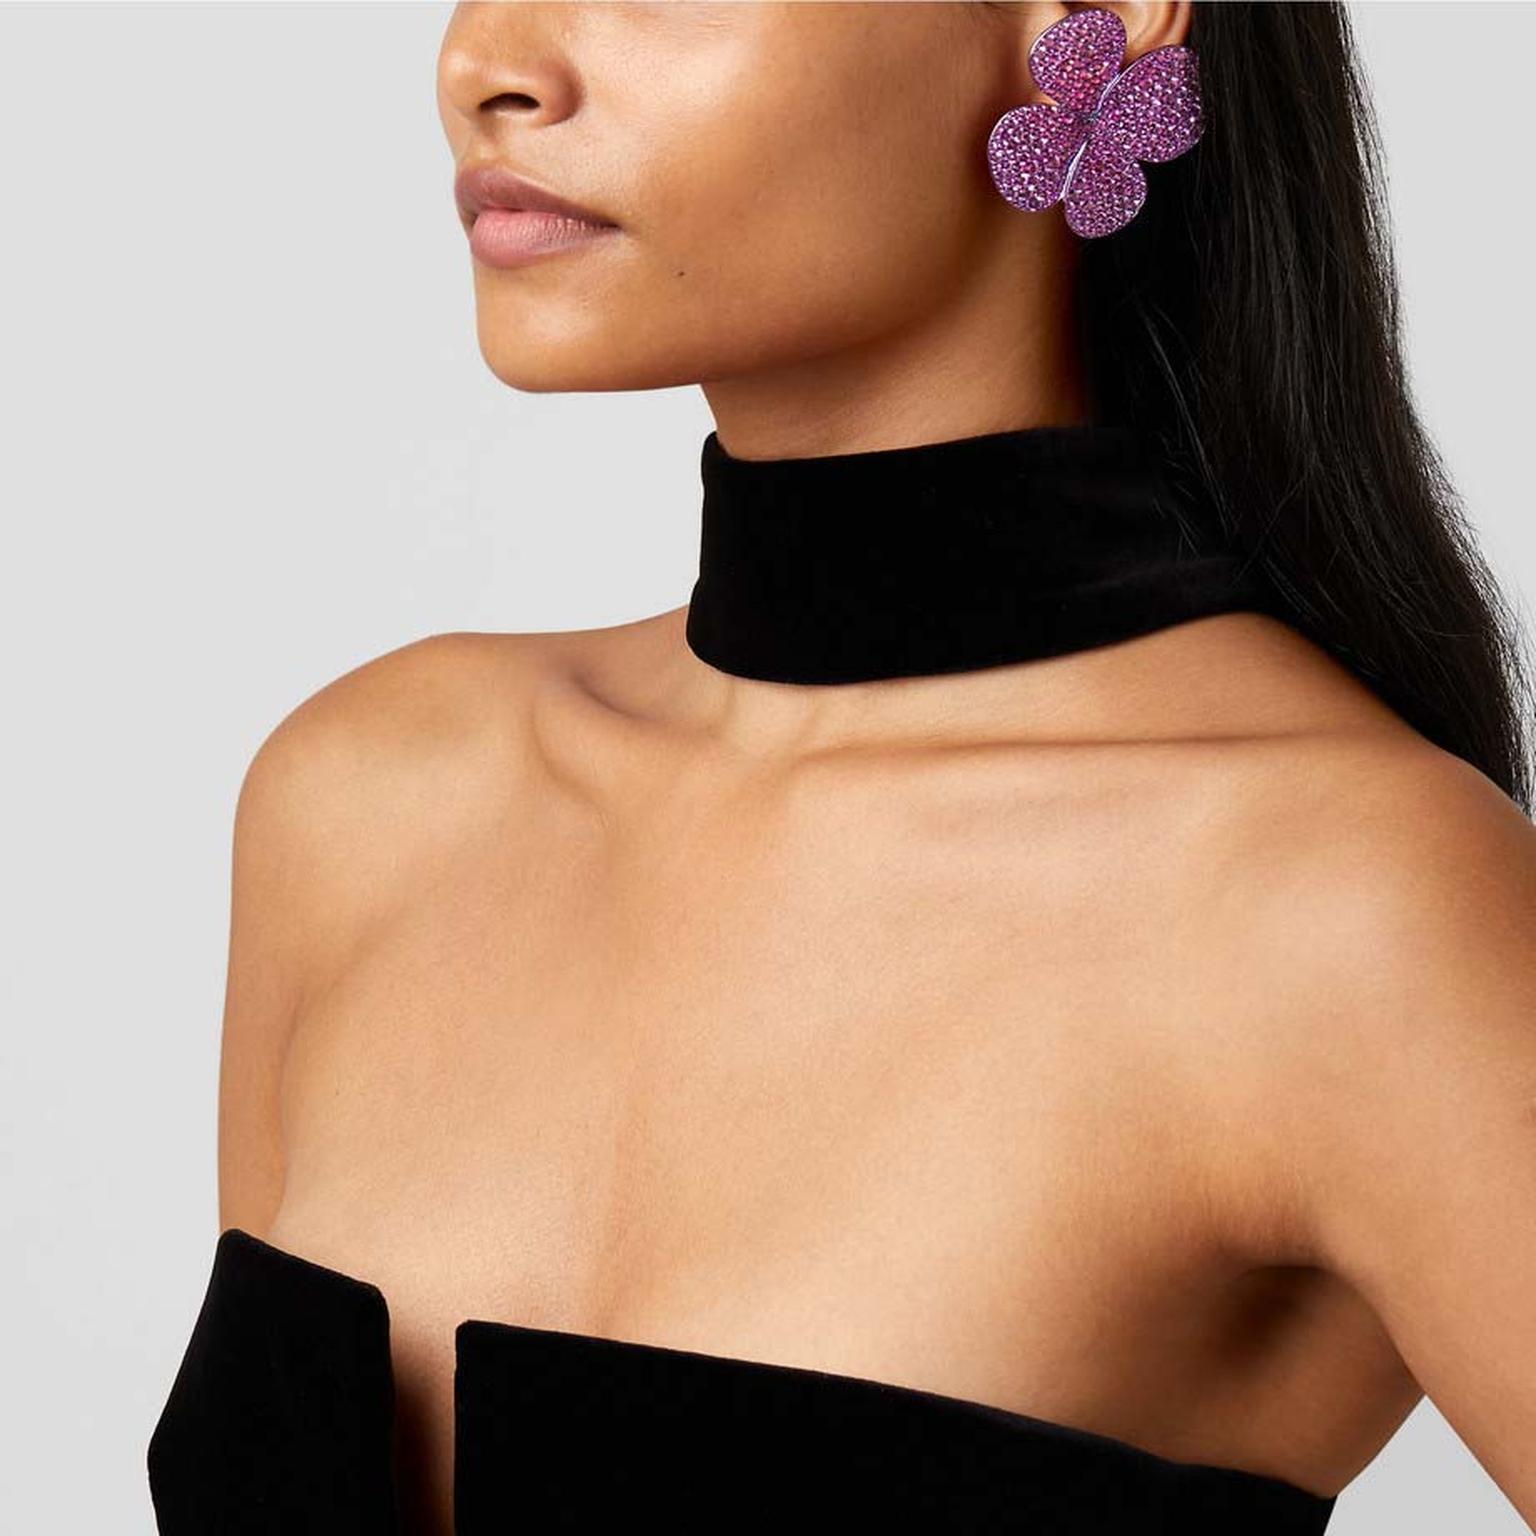 Glenn Spiro Lucky Clover oversized sapphire stud earrings on model